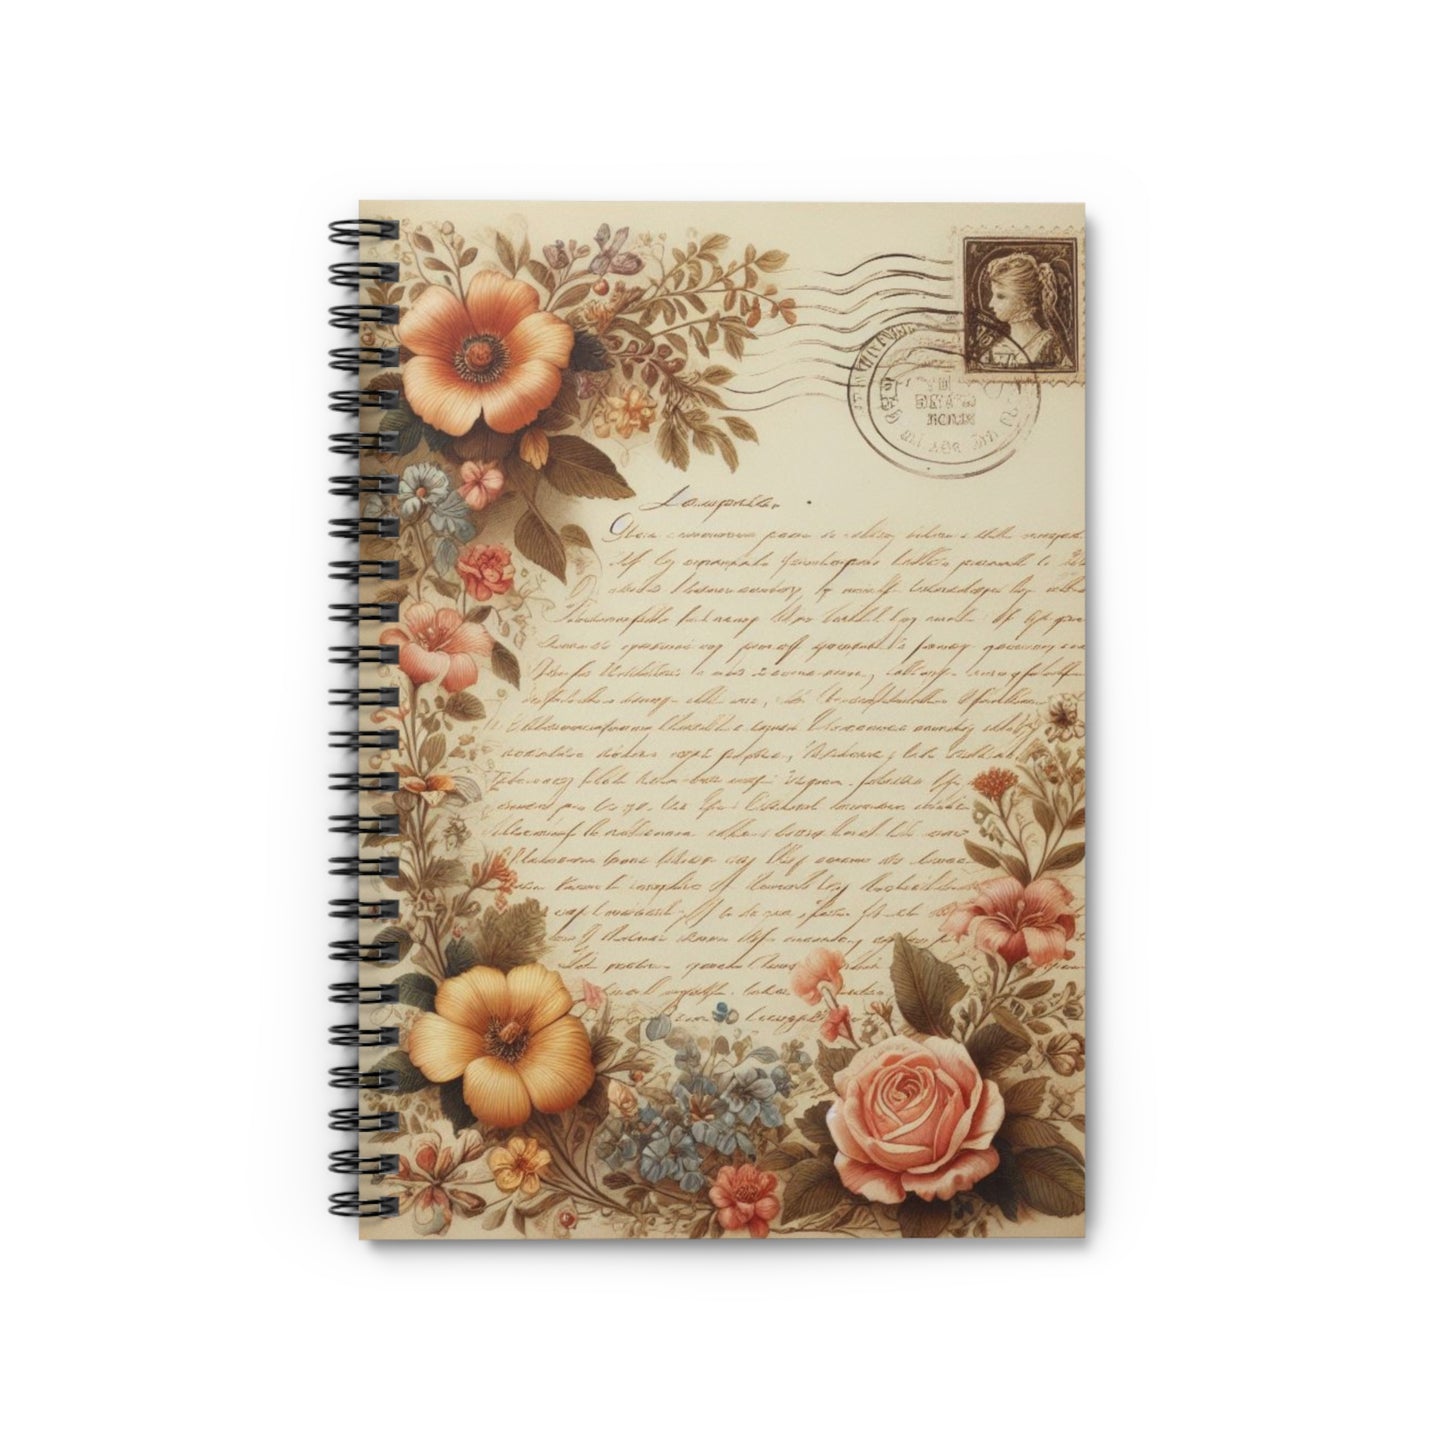 Floral Ephemera Letter Vintage Spiral Notebook Lined Journal